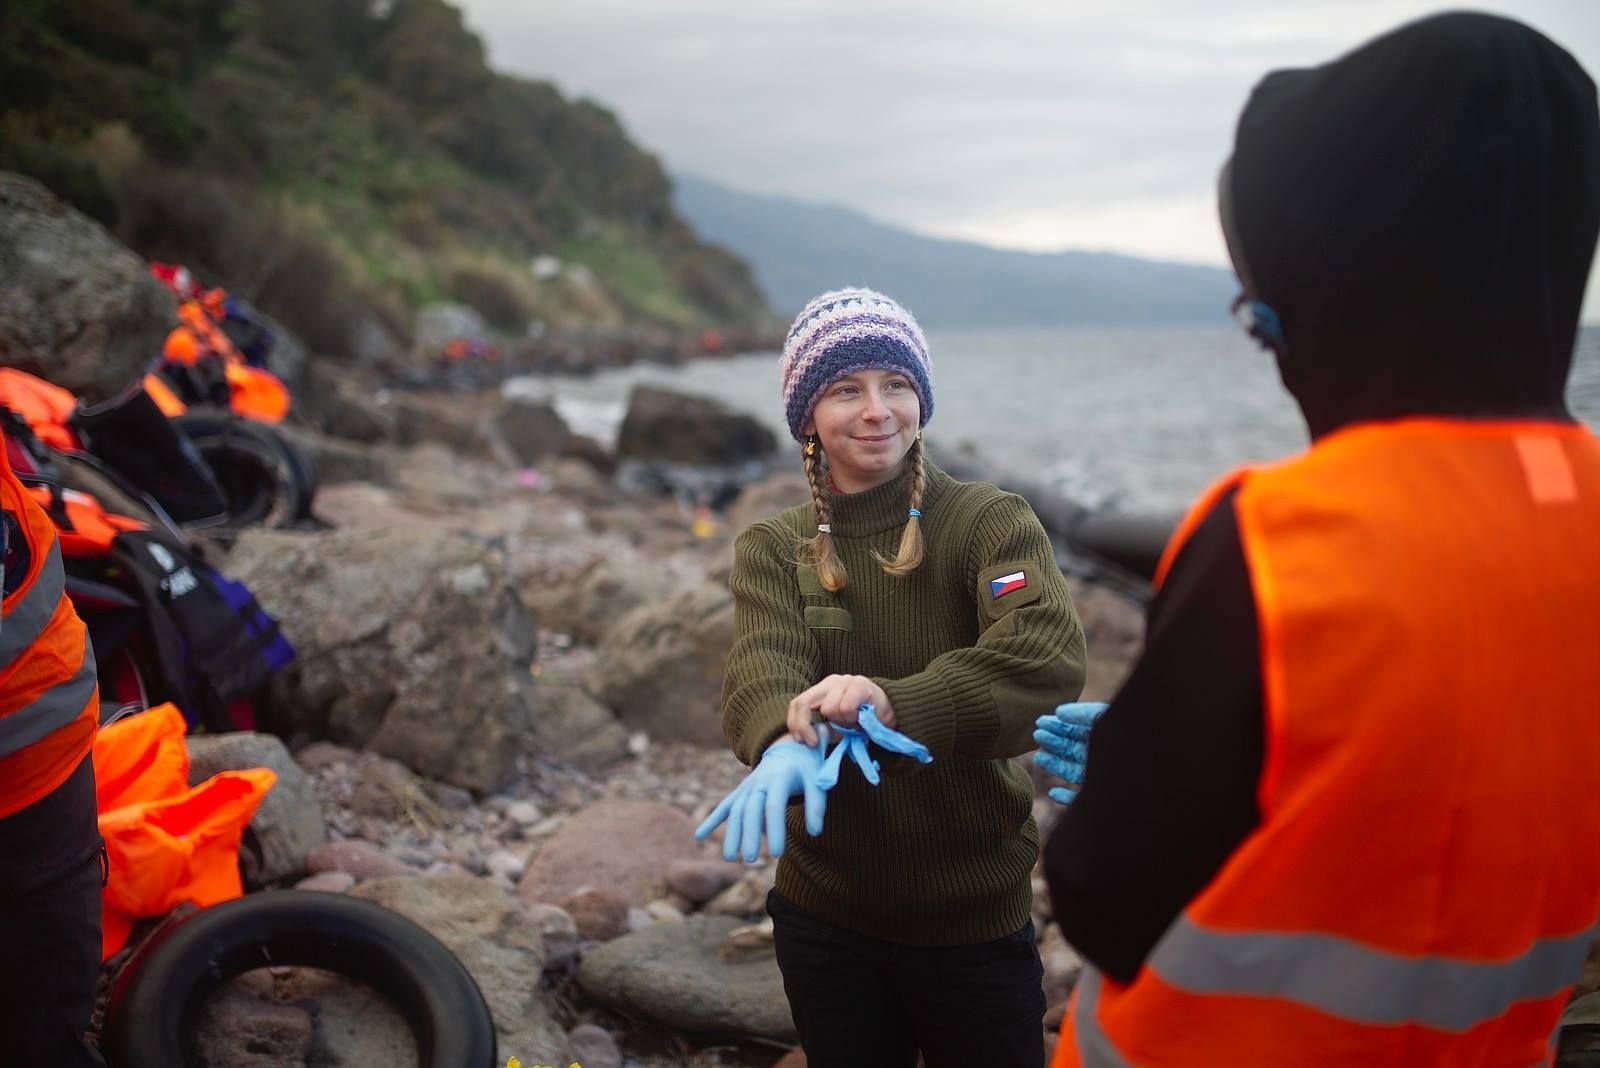 Dobrovolnice pomáhá uprchlíkům na ostrově Lesbos